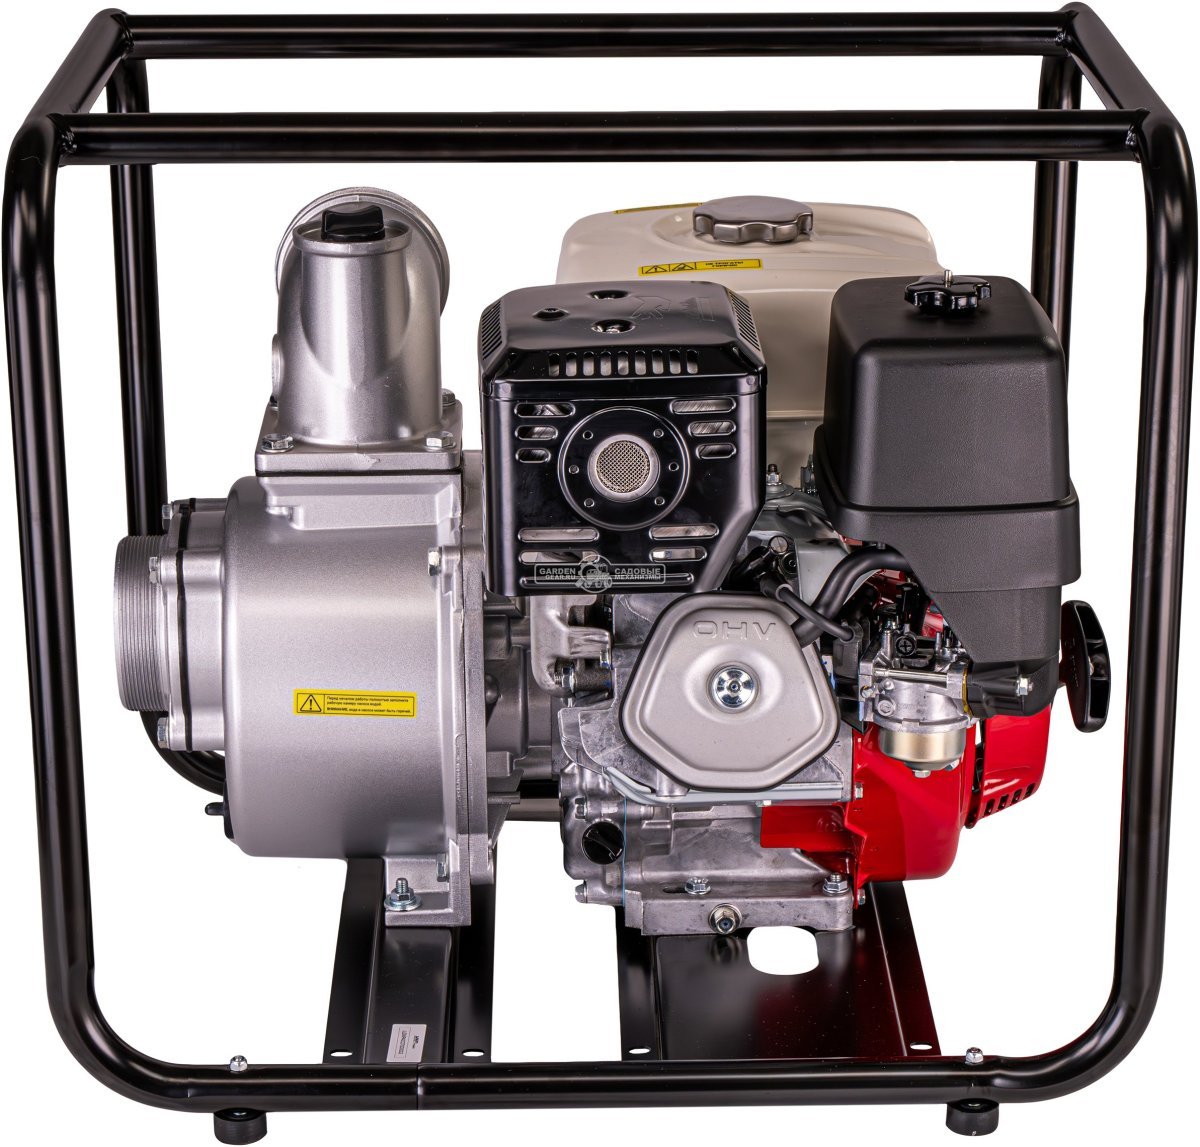 Мотопомпа бензиновая для чистой воды HND WP40X3C (PRC, Honda GX390, 100 м3/ч, 4&quot;, 52 кг)